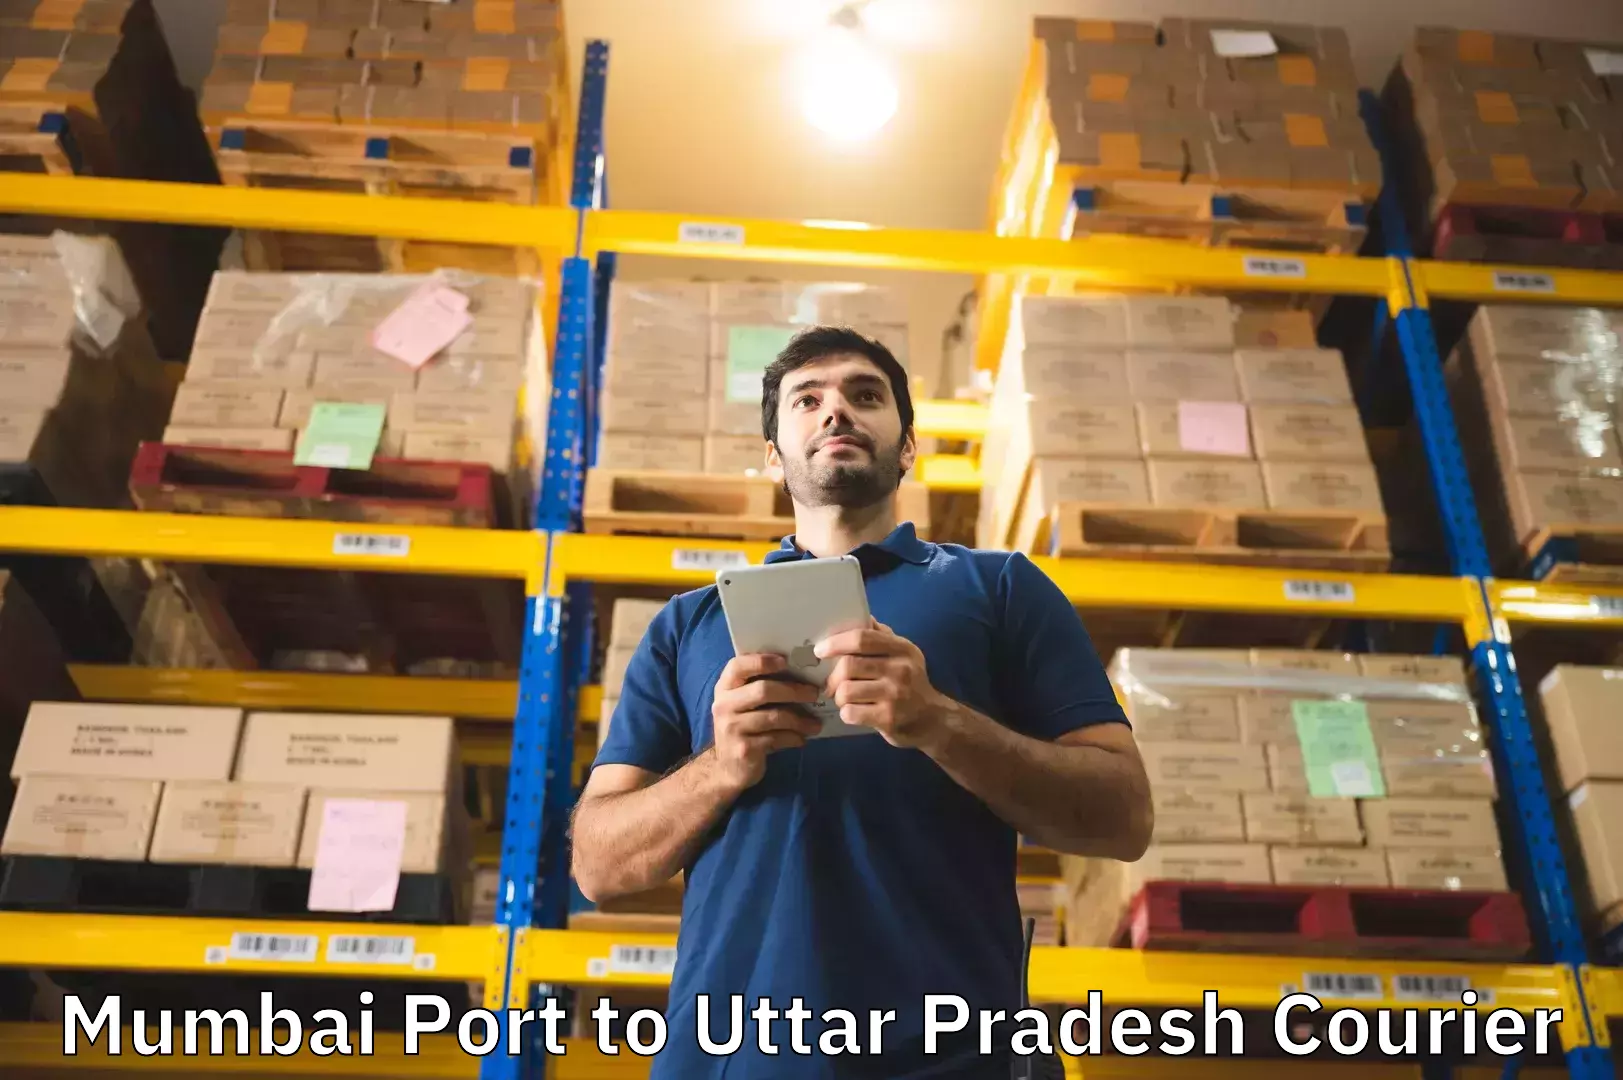 Baggage shipping logistics Mumbai Port to IIT Varanasi